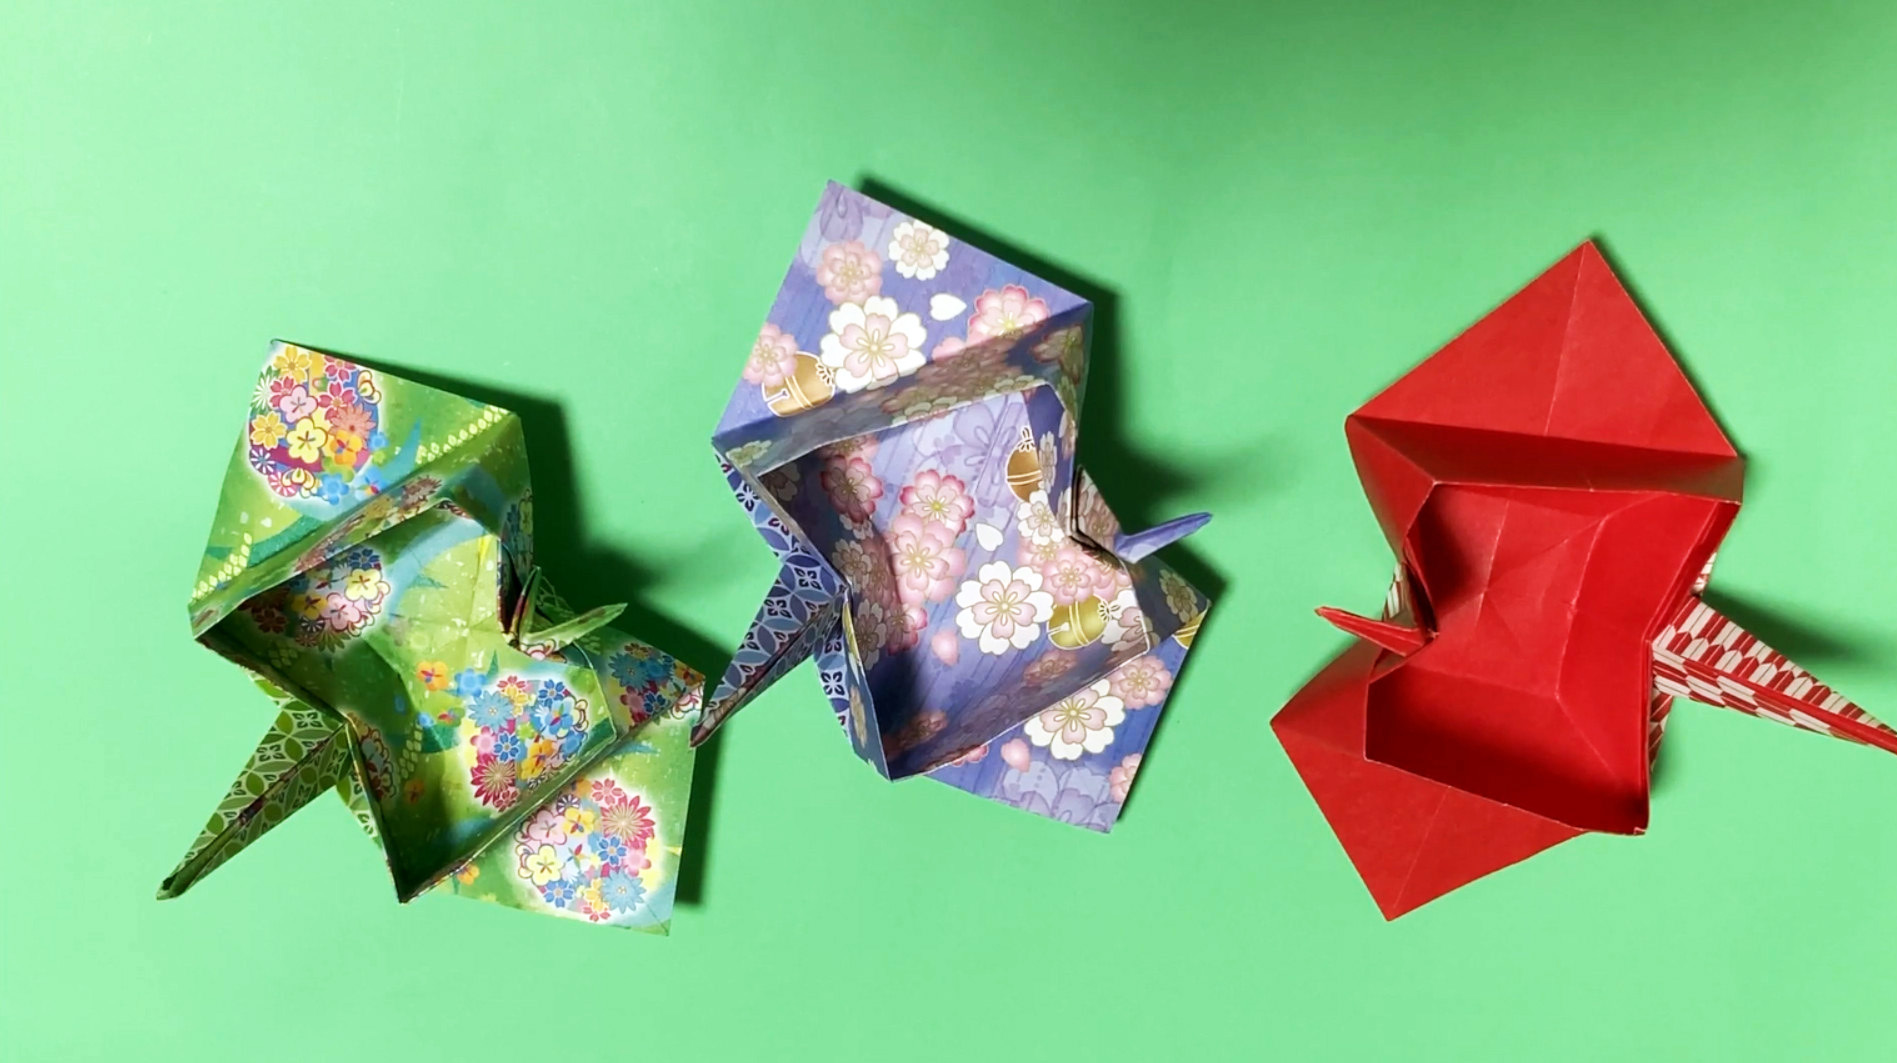 创意折纸diy教程,教你折叠一个千纸鹤收纳纸盒子